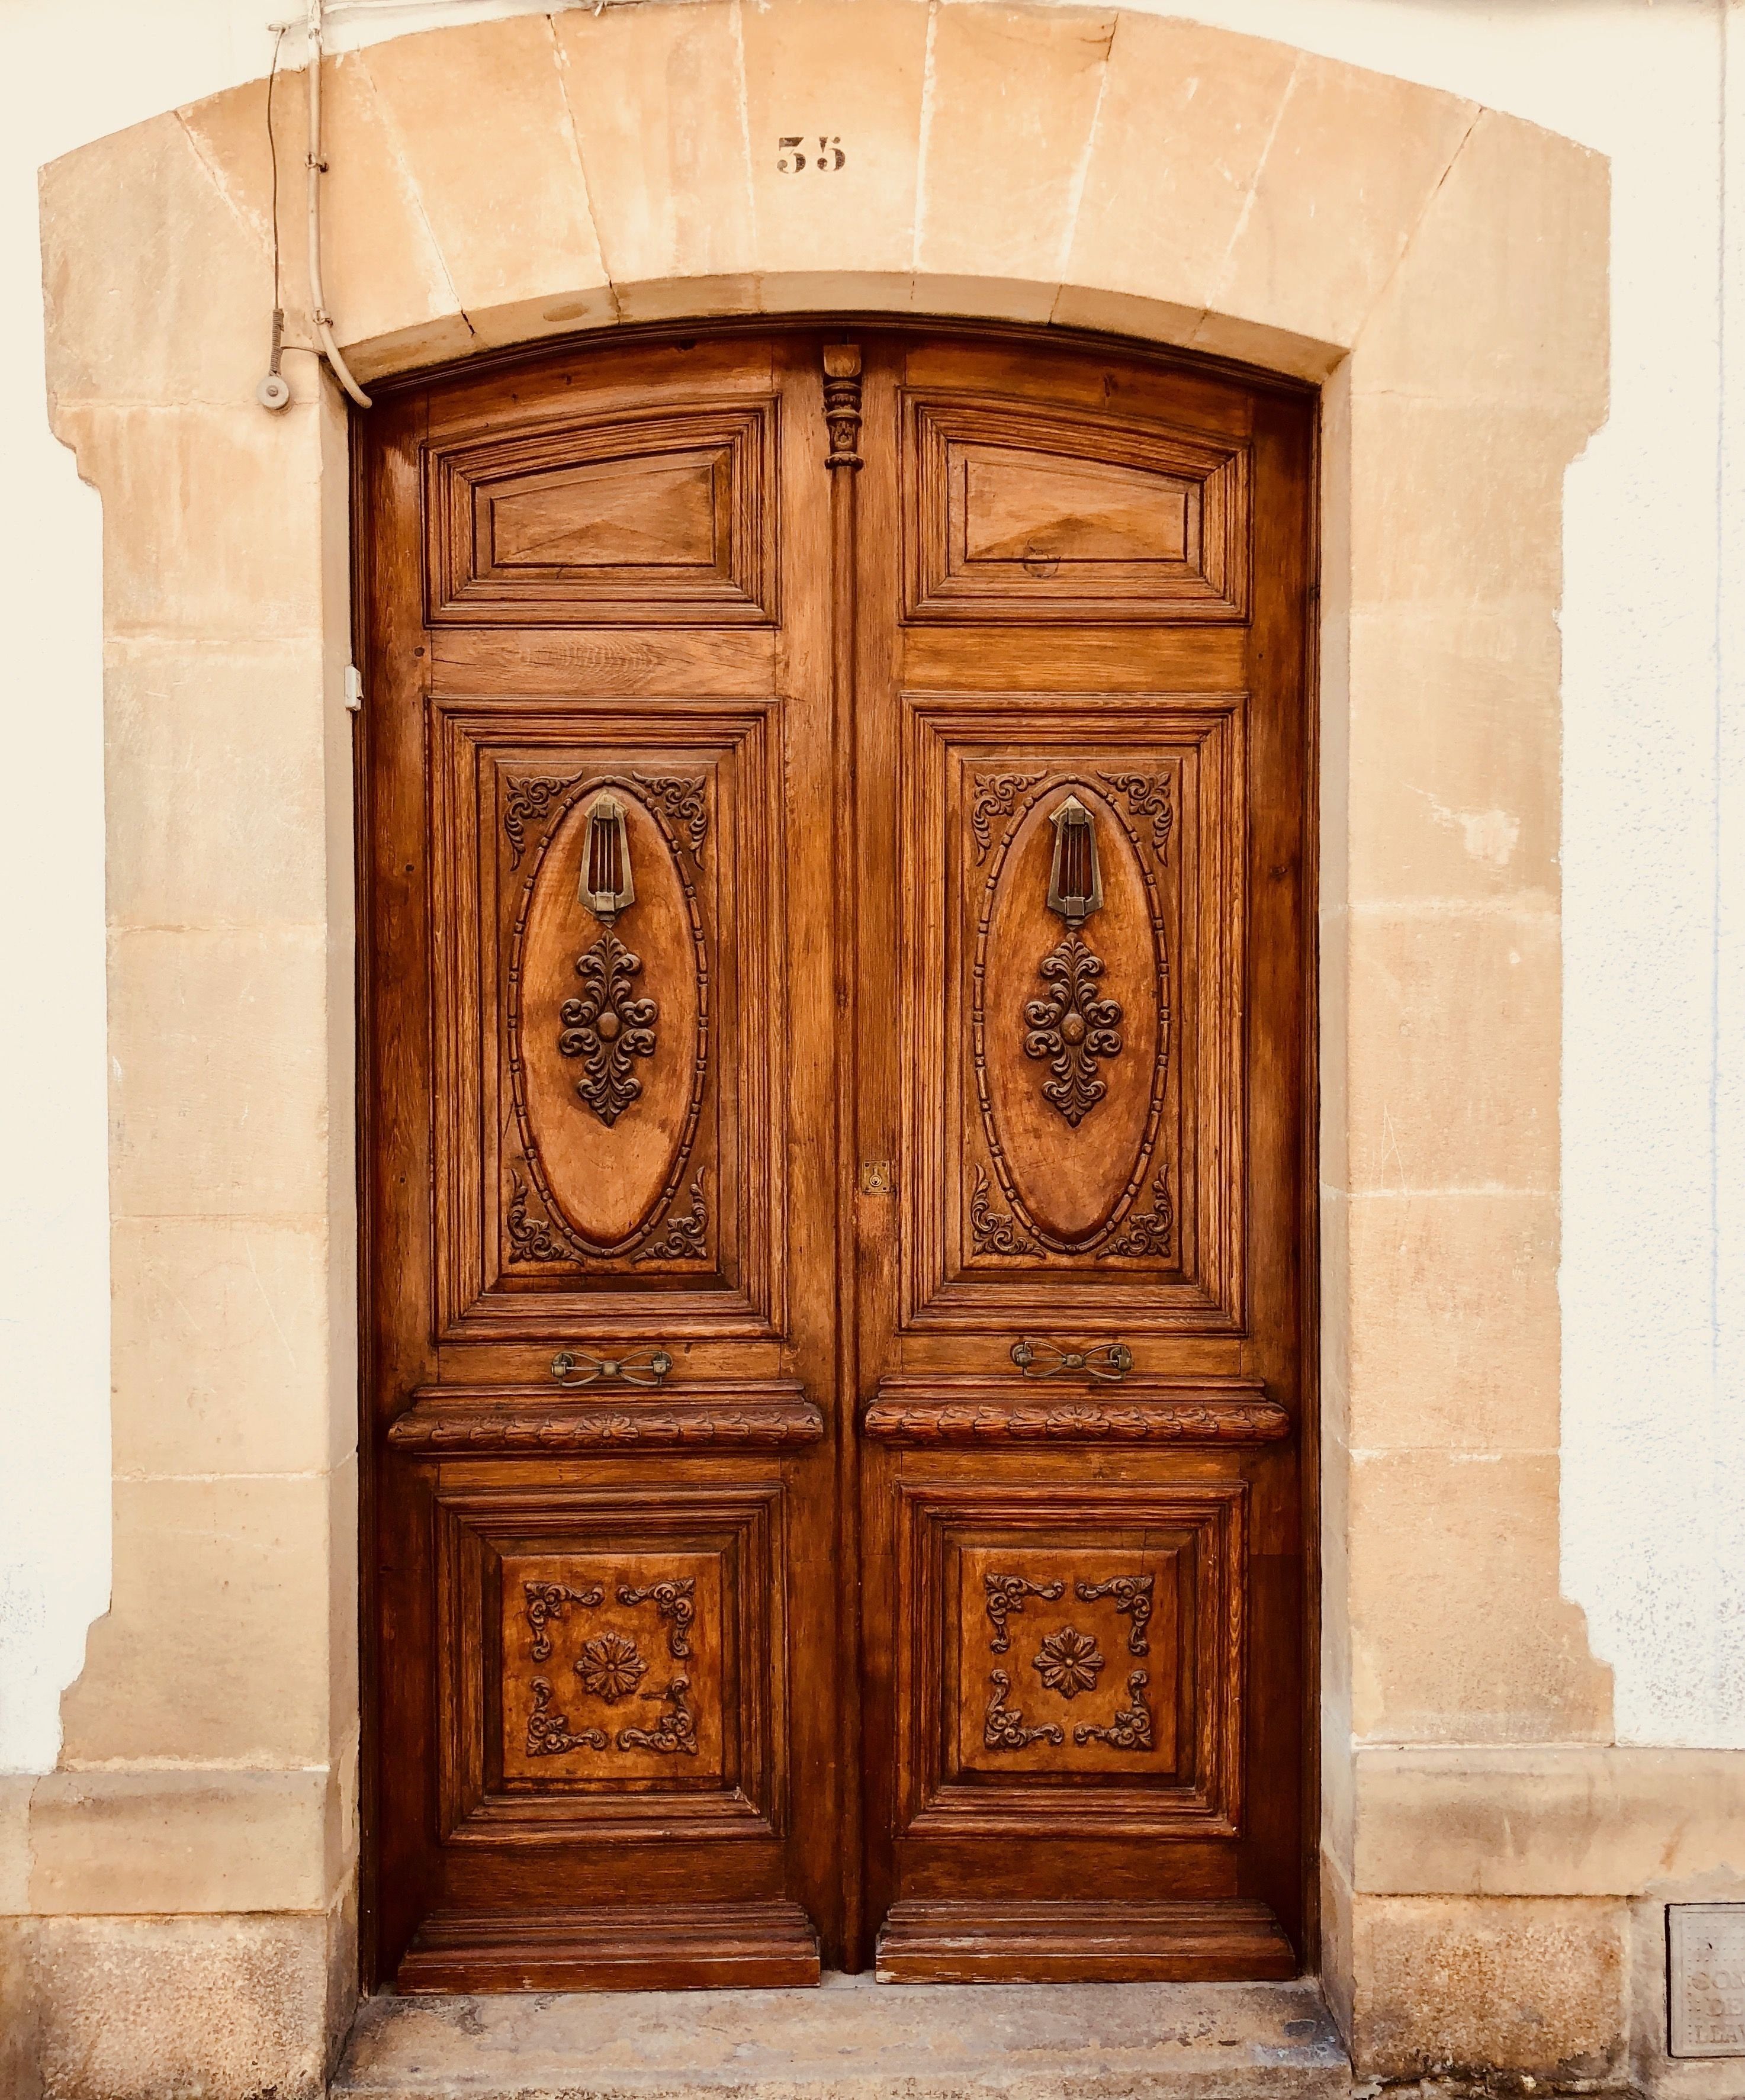 Царские двери. Старинная дверь. Старинные парадные двери. Старинные межкомнатные двери. Старая деревянная дверь.